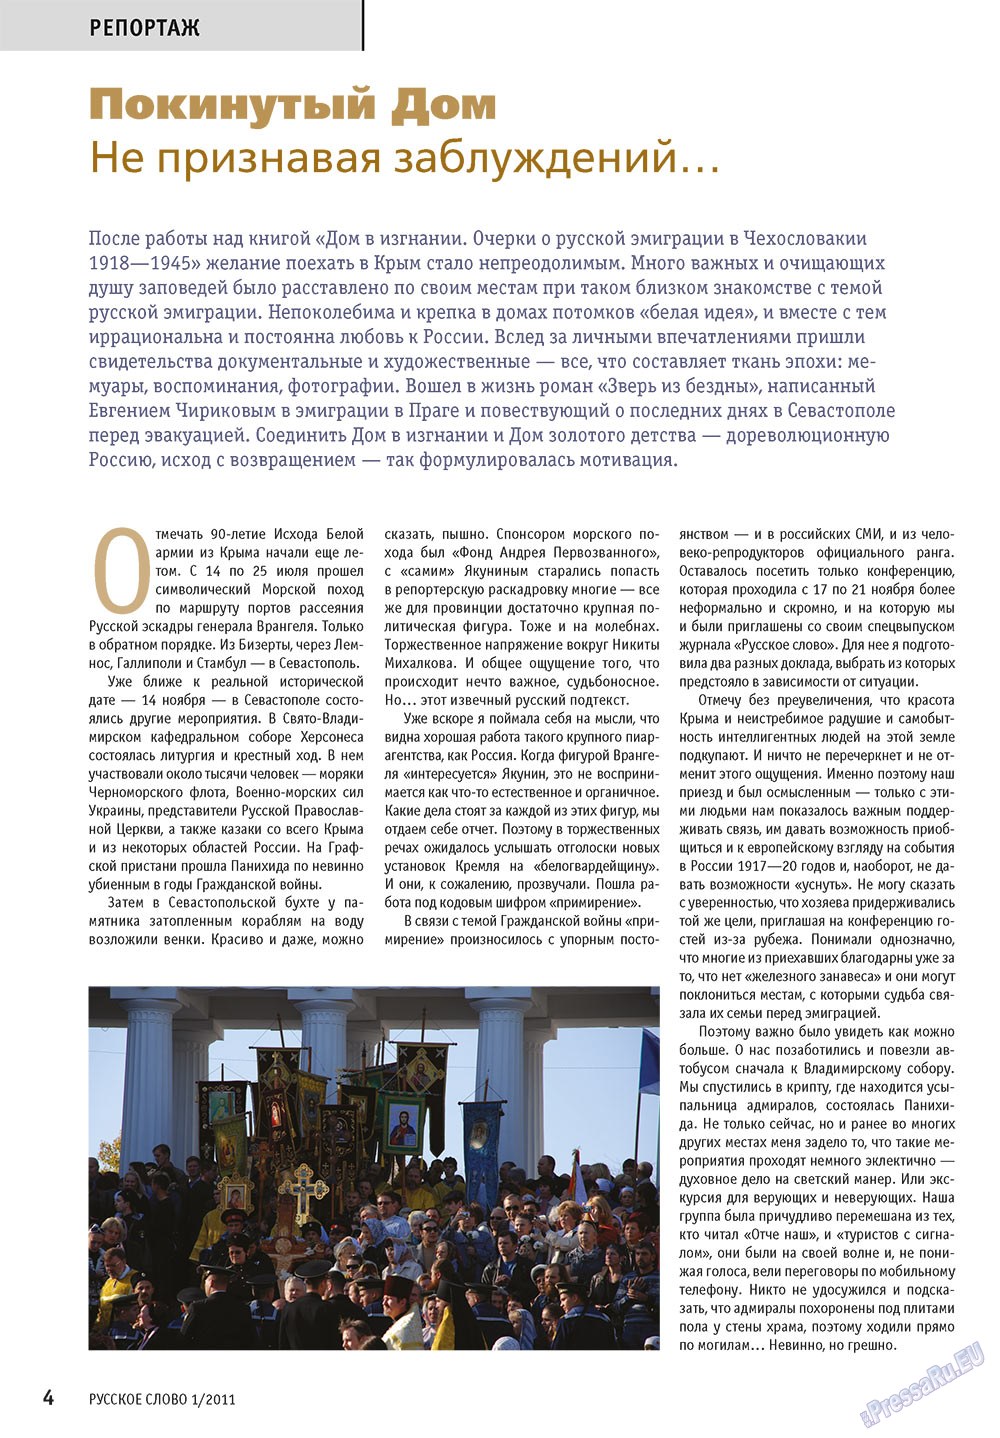 Русское слово, журнал. 2011 №1 стр.6